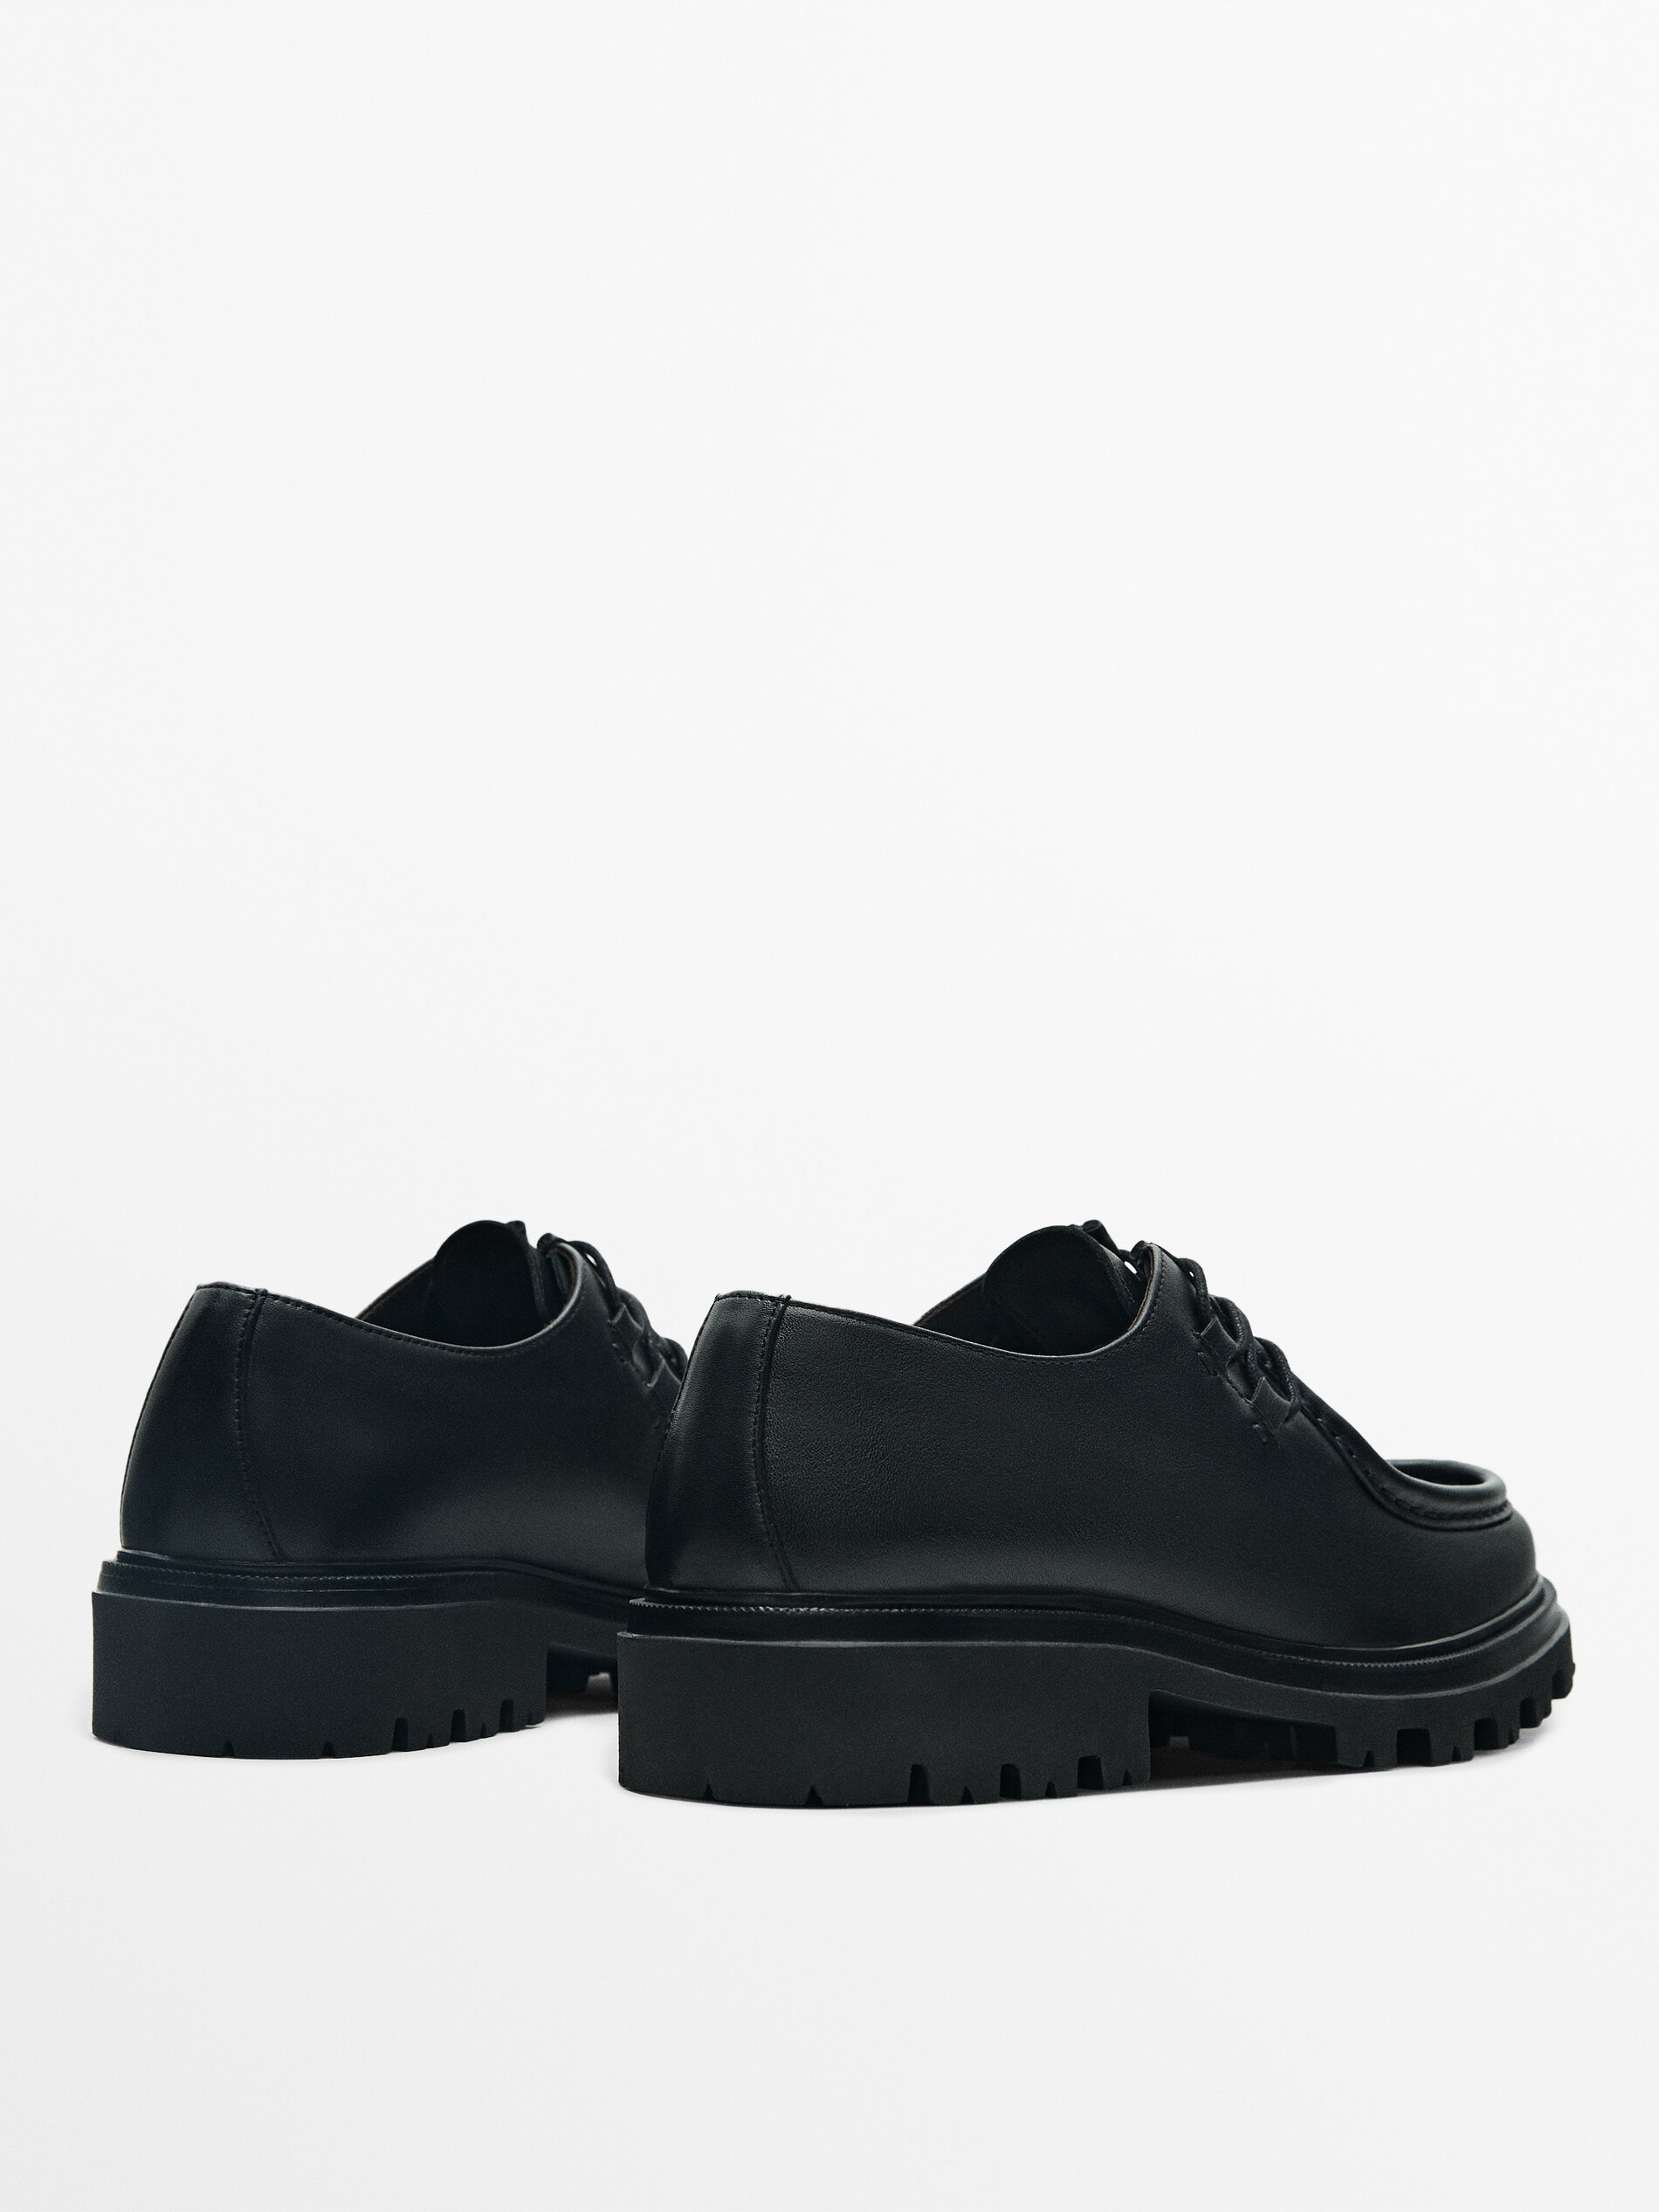 Black nappa moc toe shoes